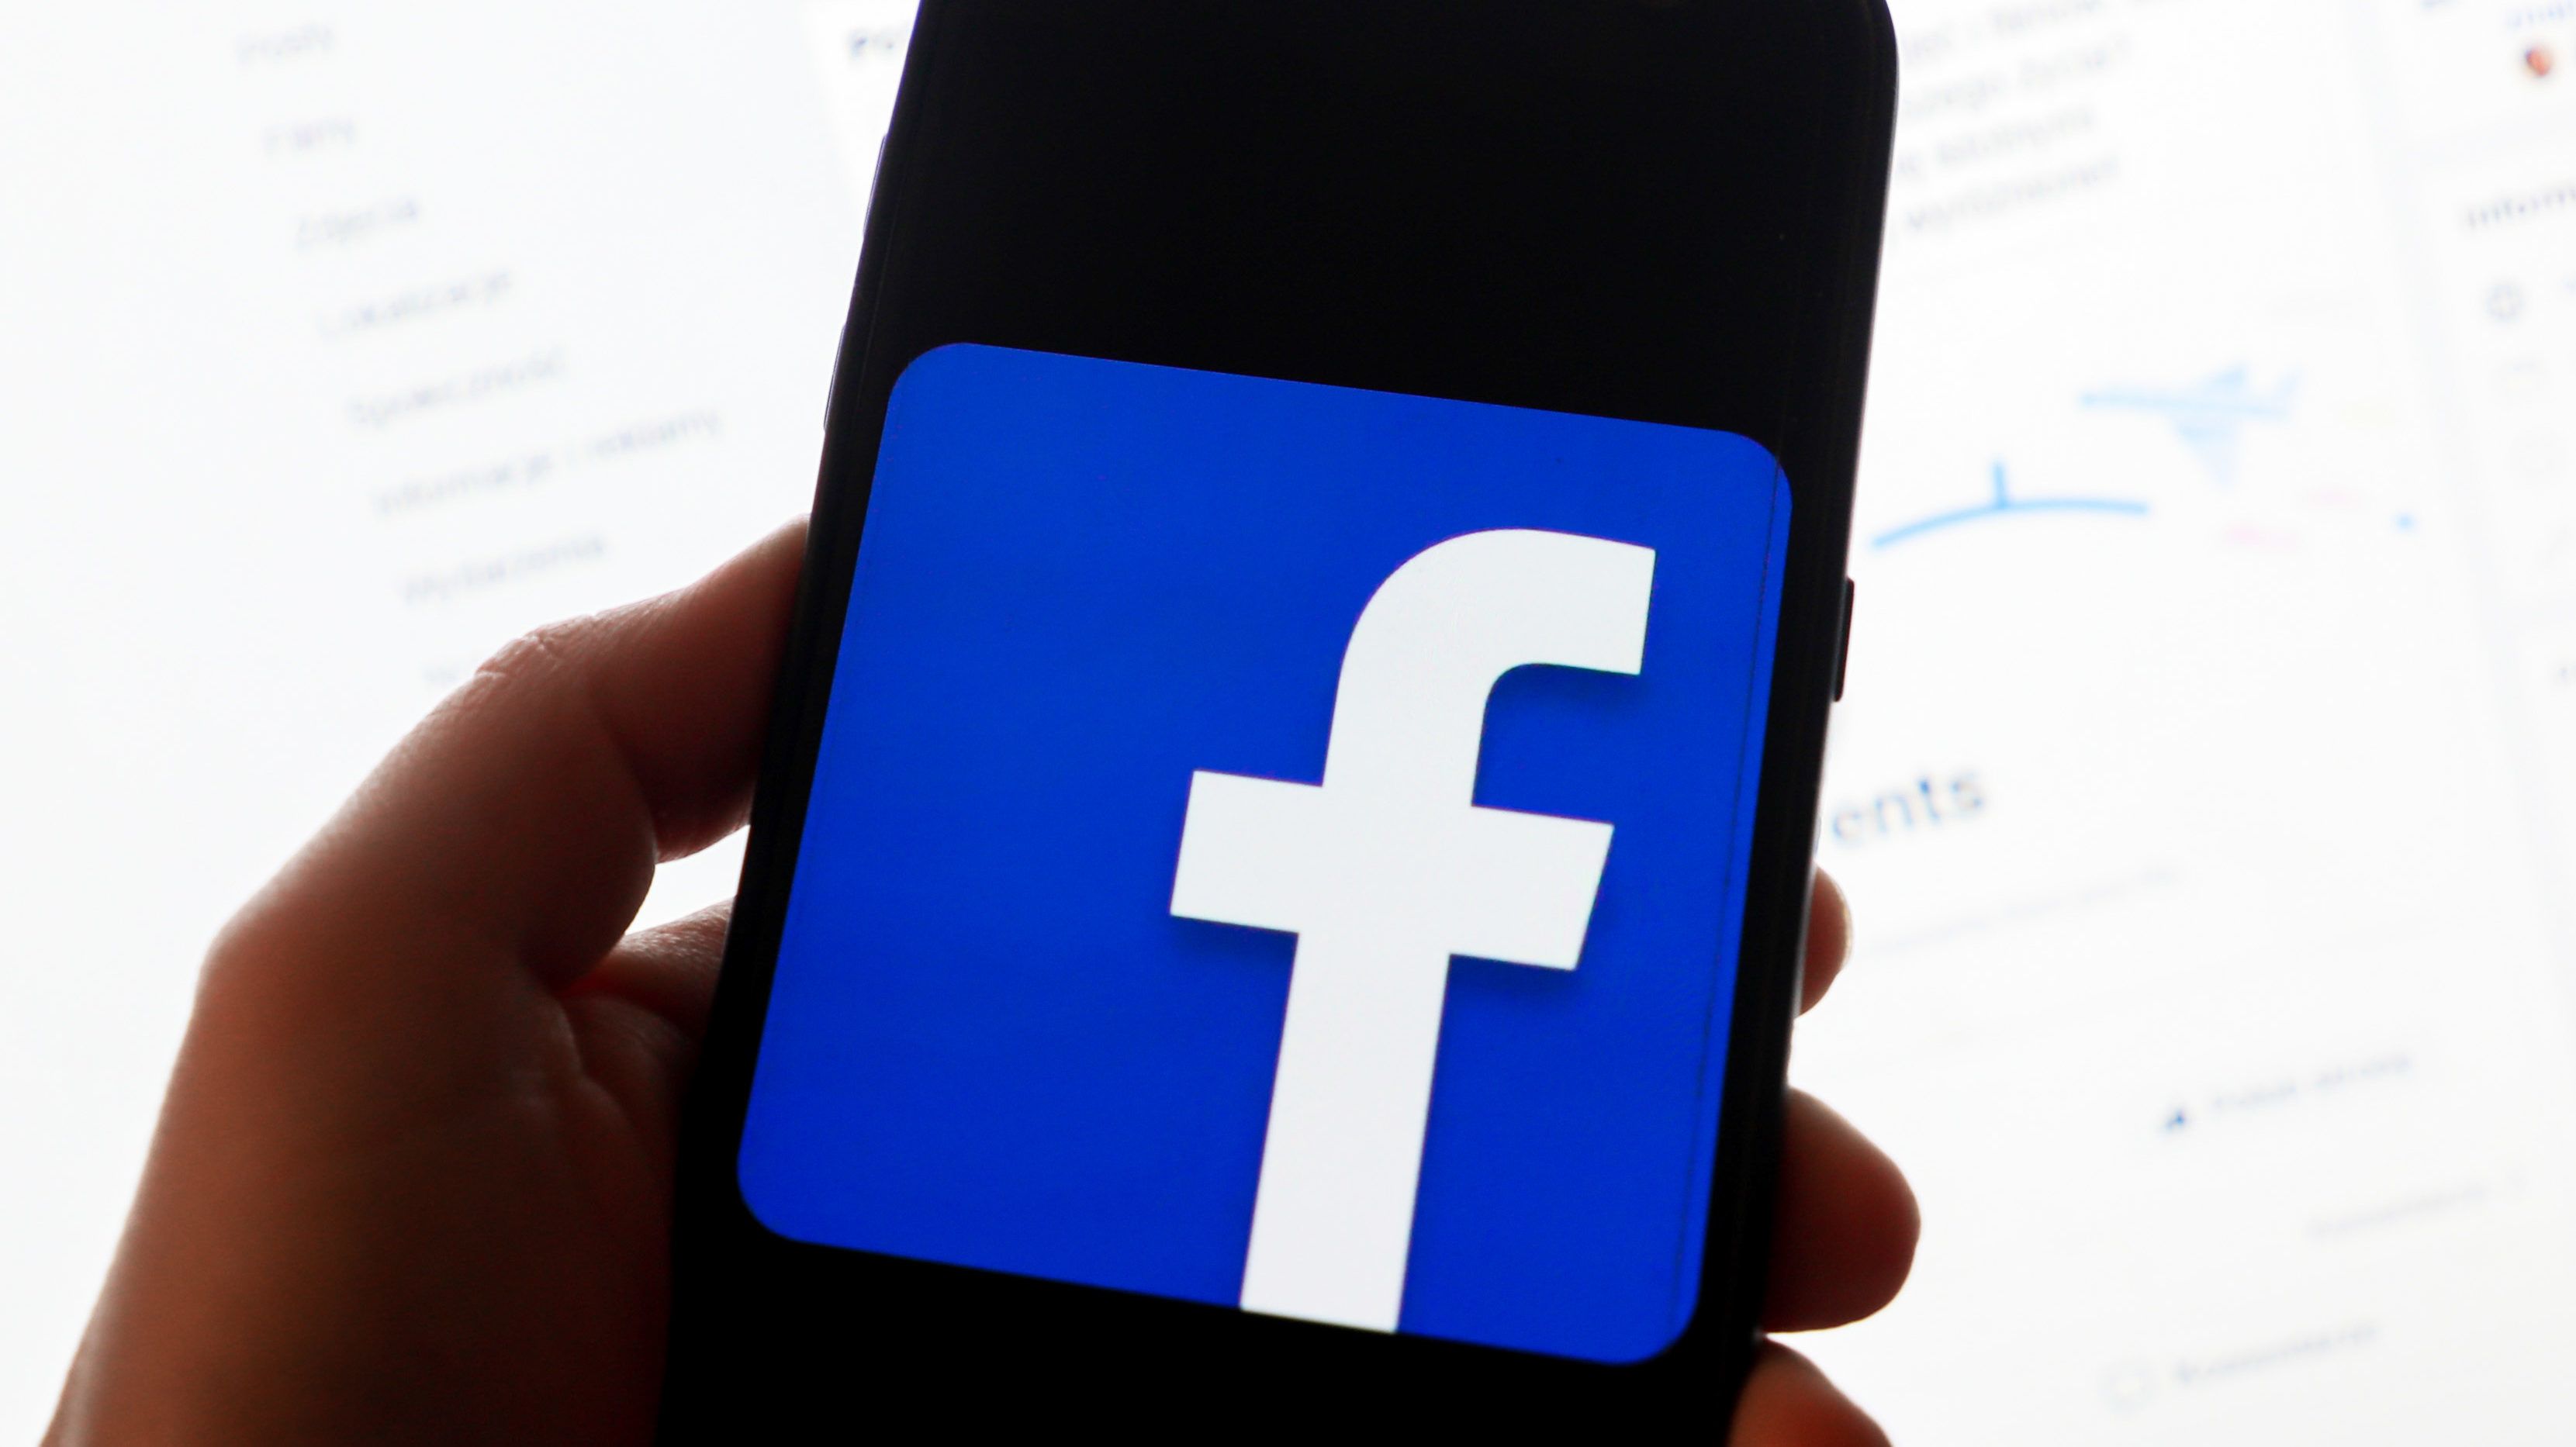 A Facebook fontosat lép a kormányzati sajtóval szemben